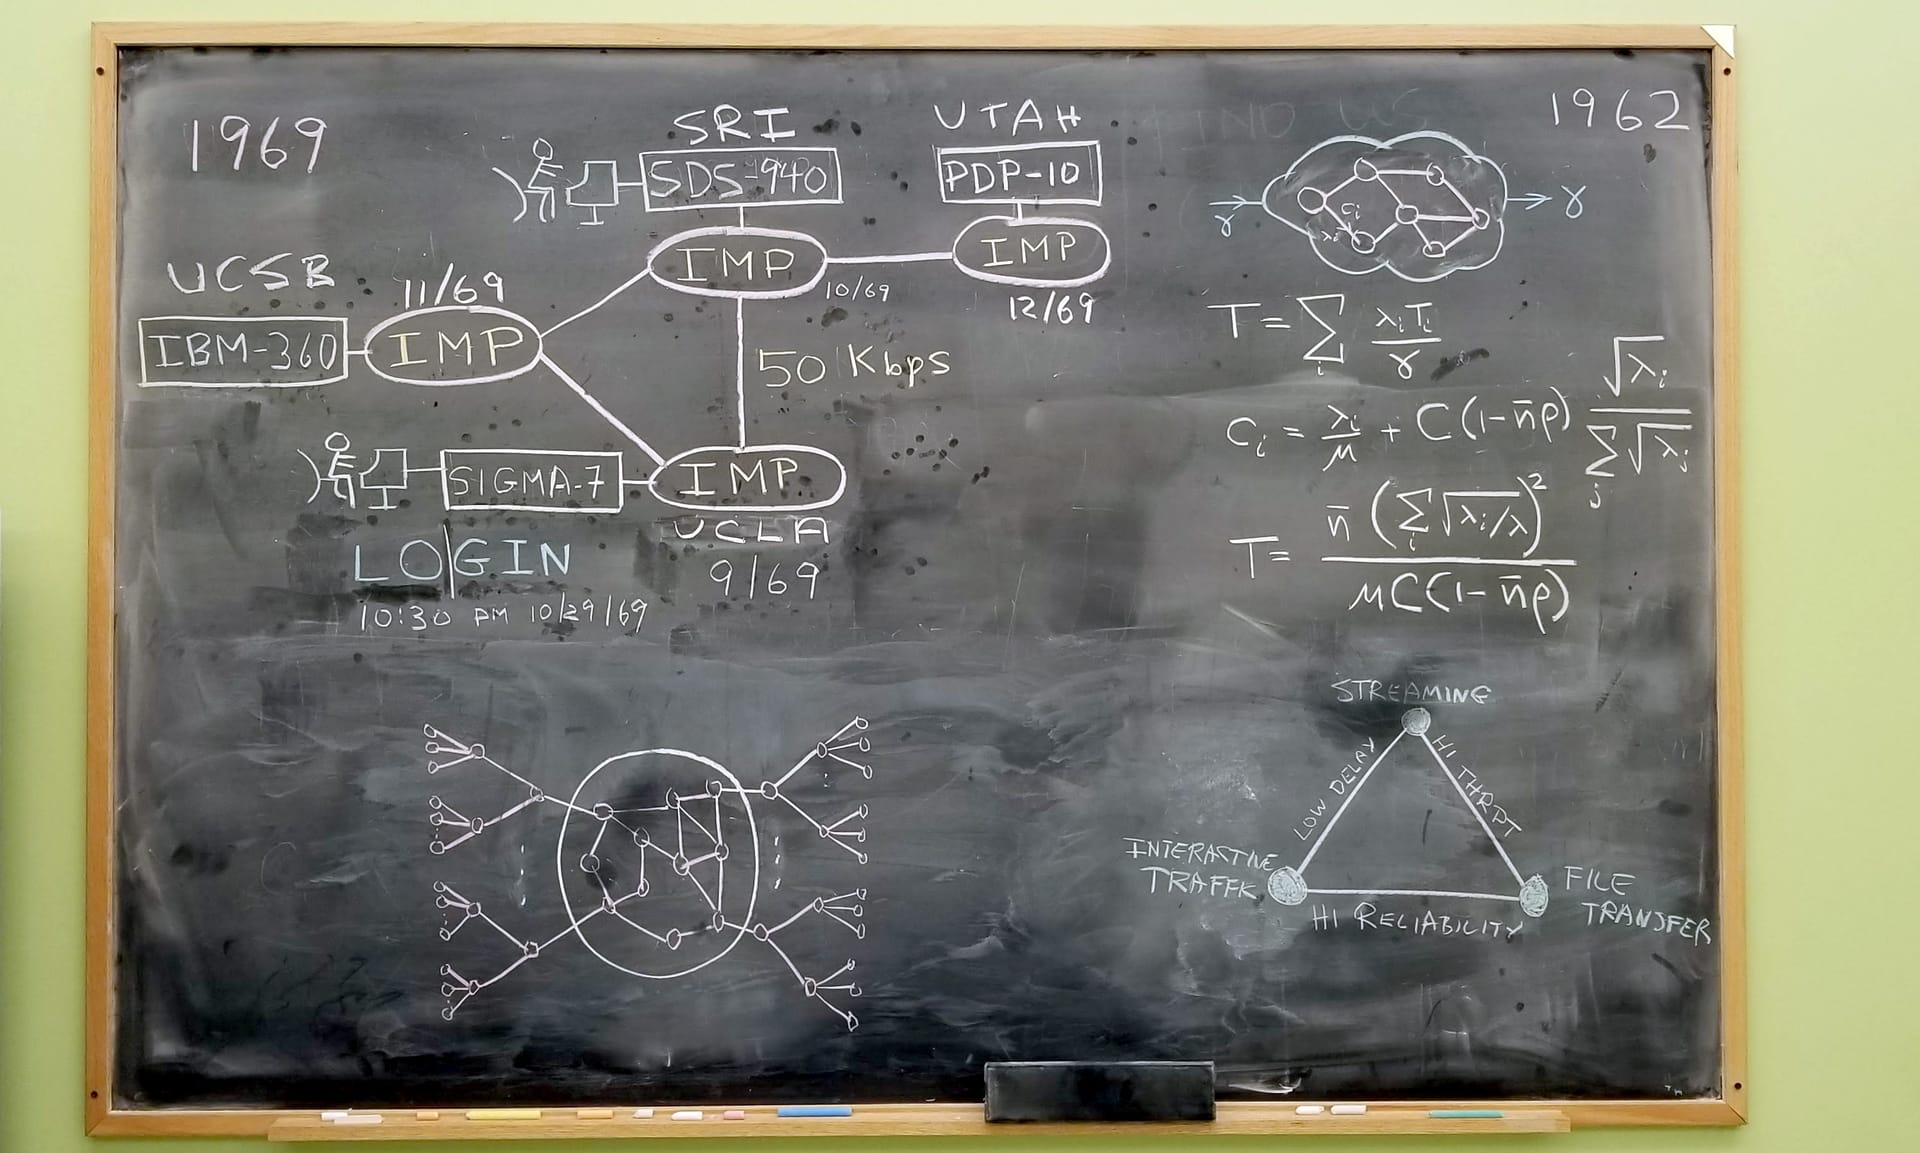 Das Foto zeigt eine Tafel in der Boelter Hall der kalifornischen Universität UCLA in Los Angeles mit Faksimiles einiger der Gleichungen und Schaltpläne, die 1969 zum Arpanet, dem ersten Netz im Internet, führten